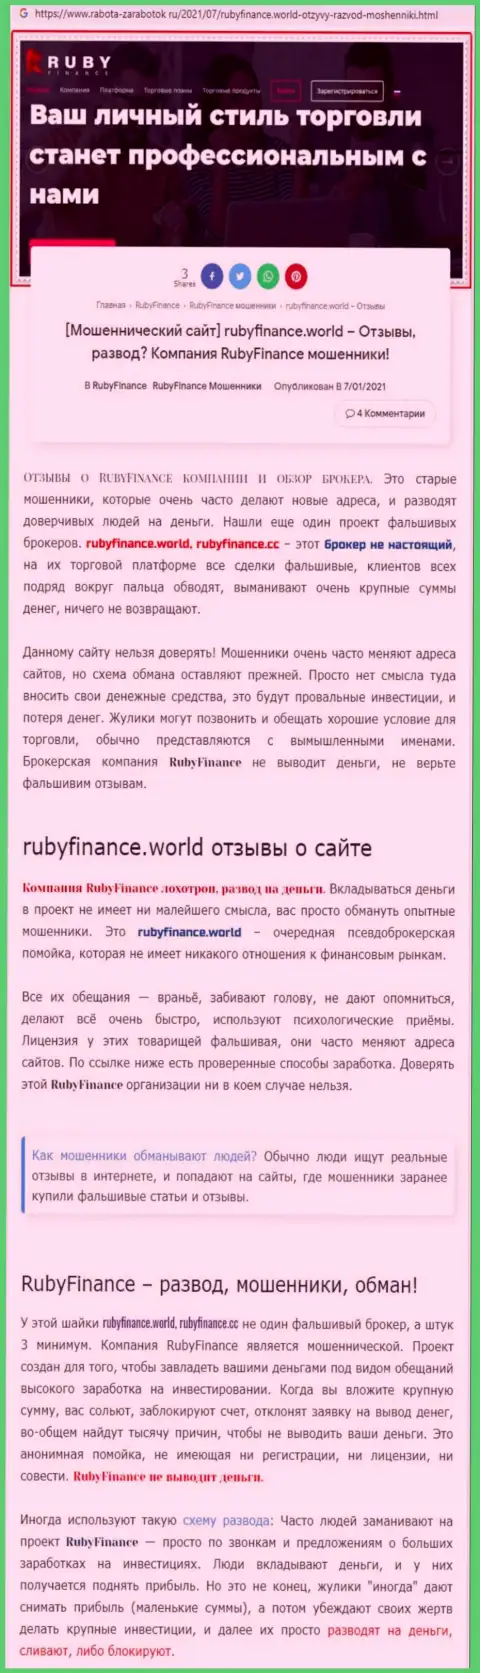 RubyFinance World - это однозначно ЖУЛИКИ !!! Обзор неправомерных деяний компании